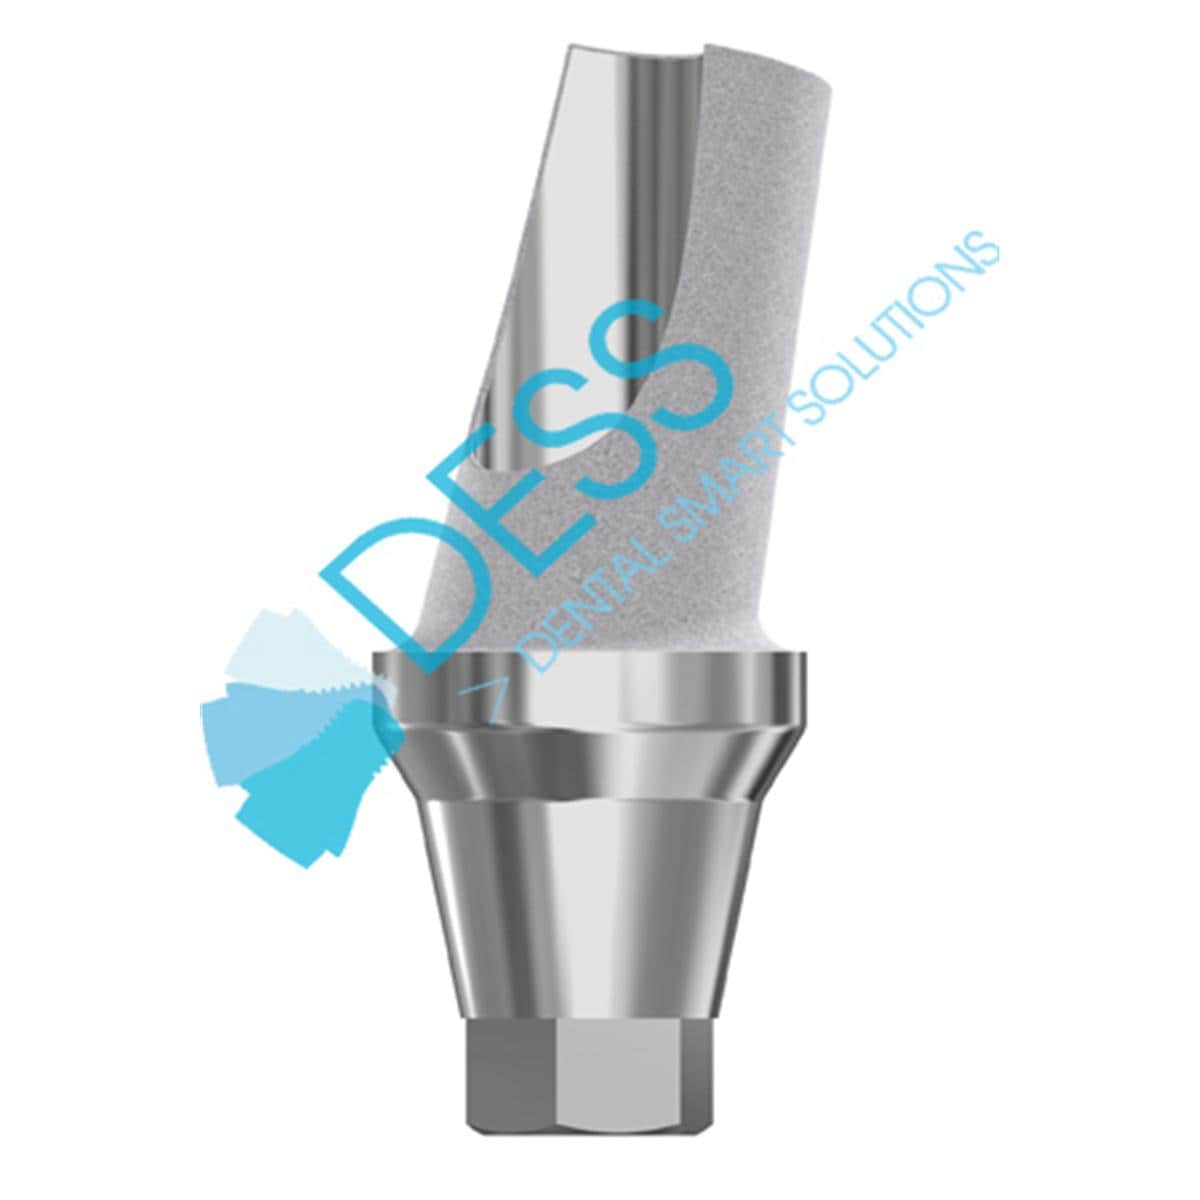 Titanabutment - kompatibel mit Astra Tech™ Osseospeed™ - Lilac (WP) Ø 4,5 mm - 5,0 mm, 15° gewinkelt